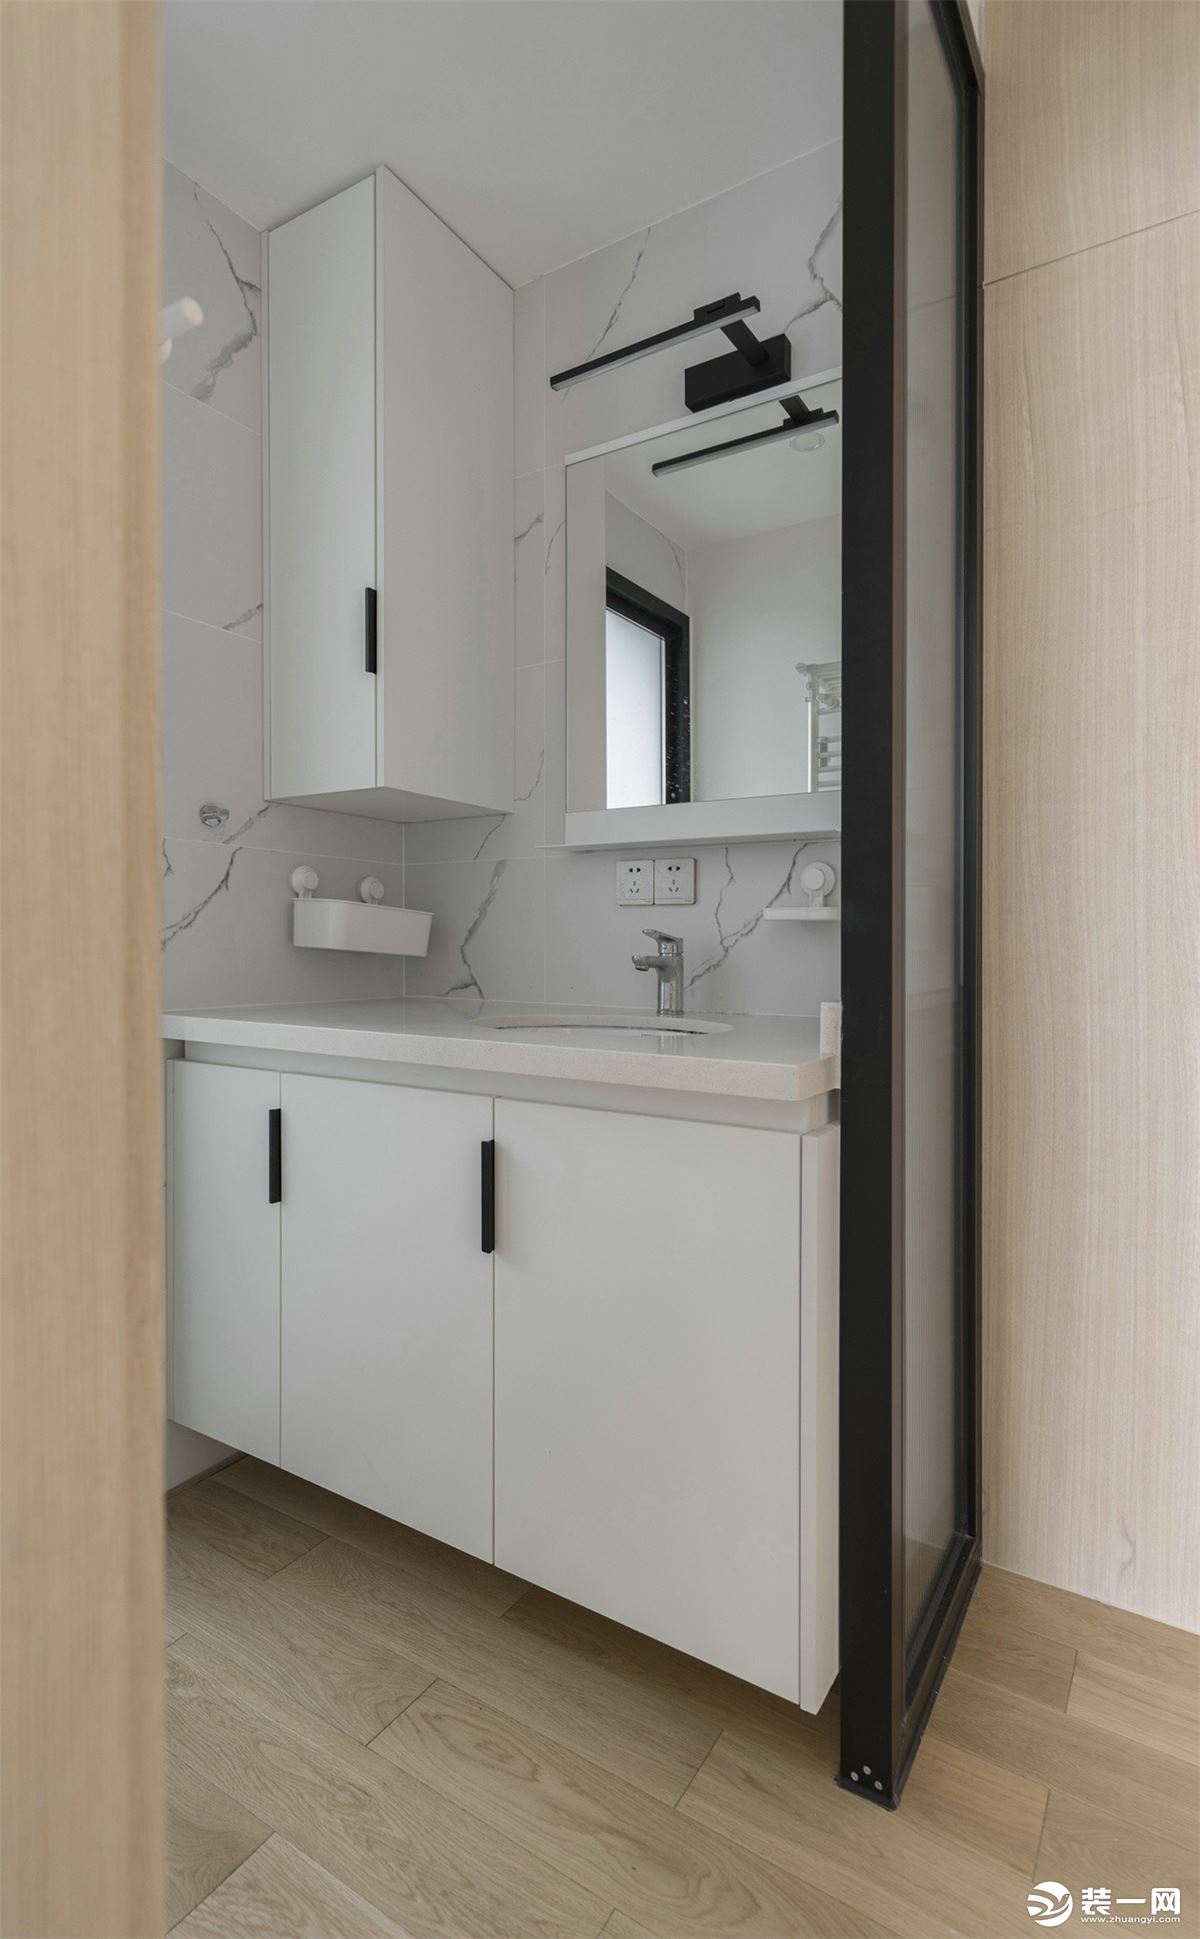 卫生间将洗手台外置，提高了日常使用效率。黑白色调的浴室柜与大理石墙砖的纹理相呼应，视觉上营造了延伸的